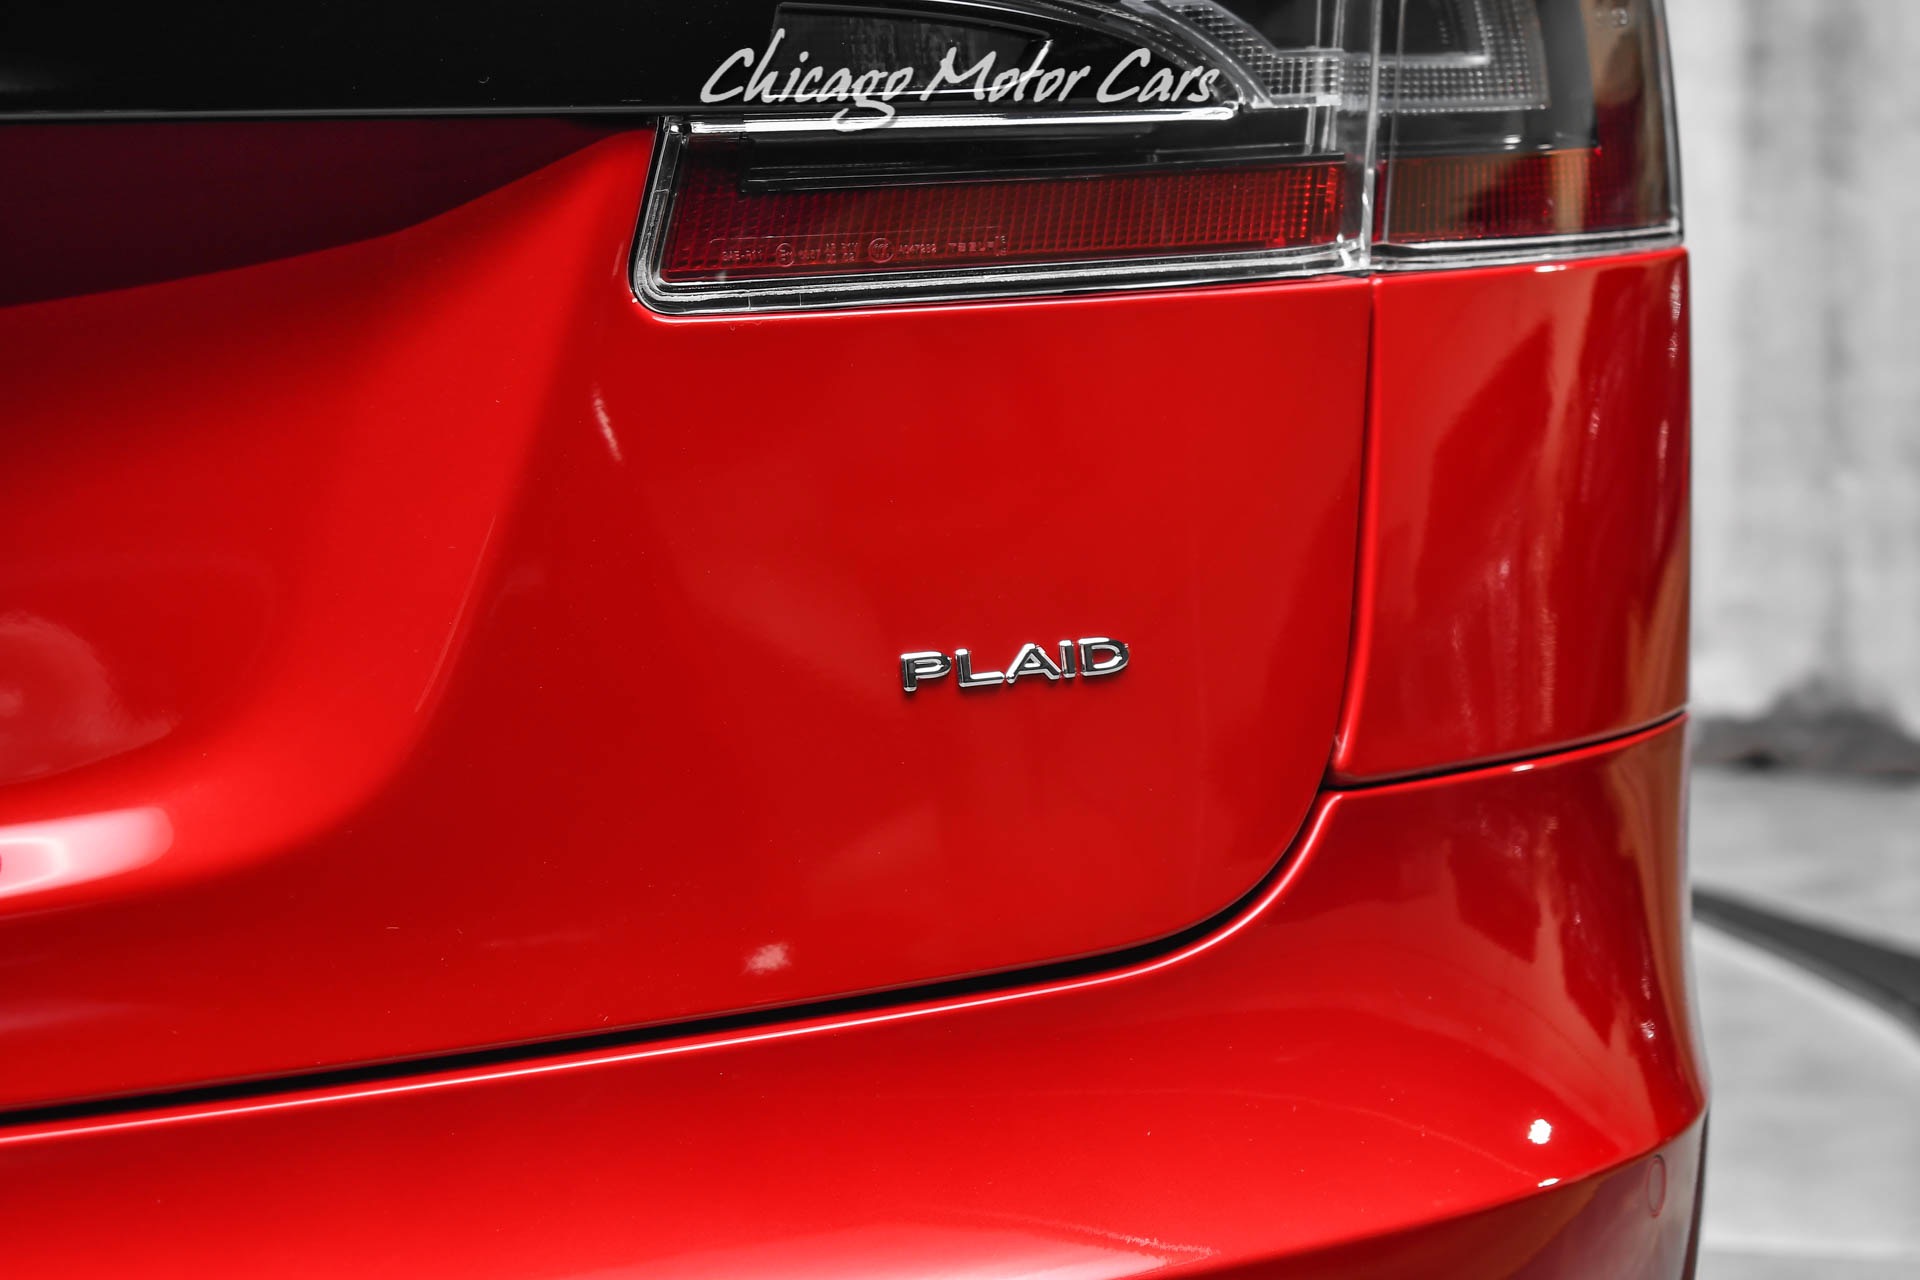 Used-2021-Tesla-Model-S-Plaid-Sedan-Red-Multi-Coat-ONLY-144-Miles-Autopilot-Worlds-Fastest-Sedan